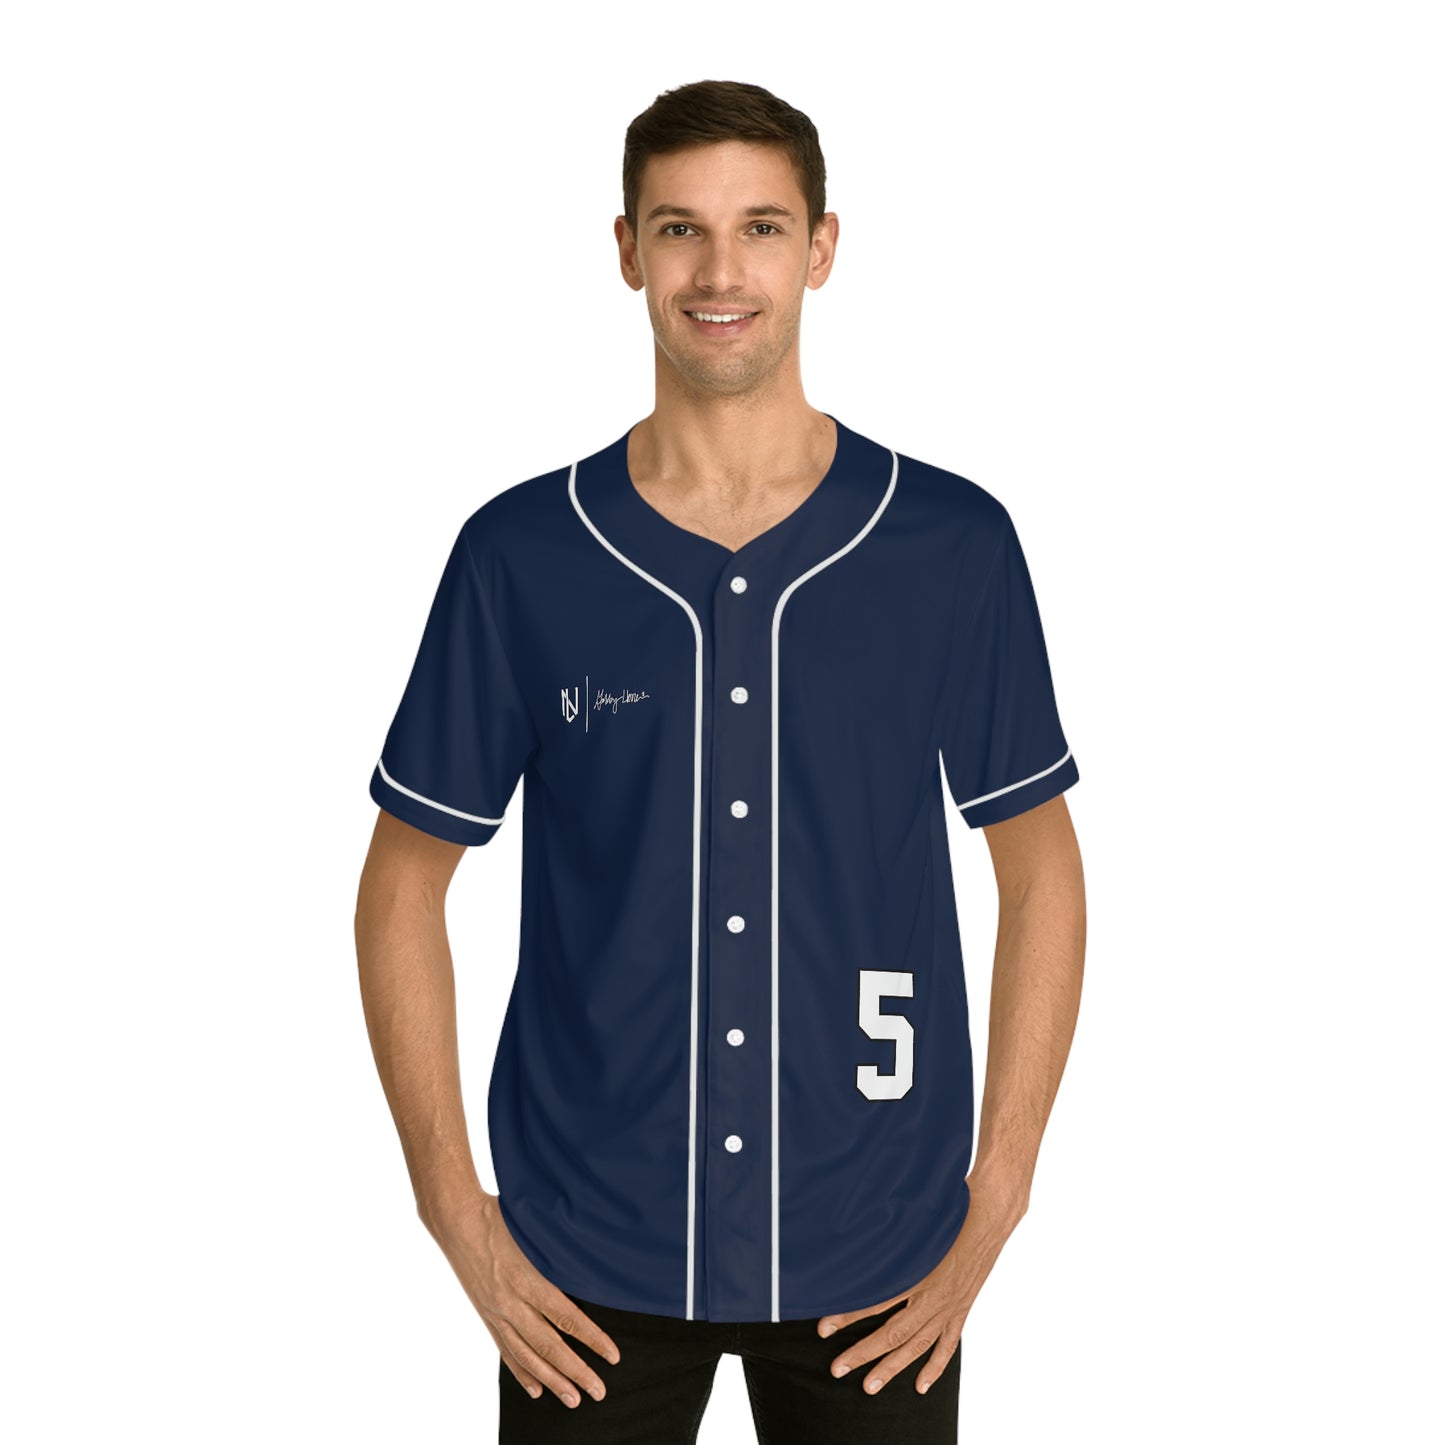 Gabby Herrera Softball Jersey (Blue)